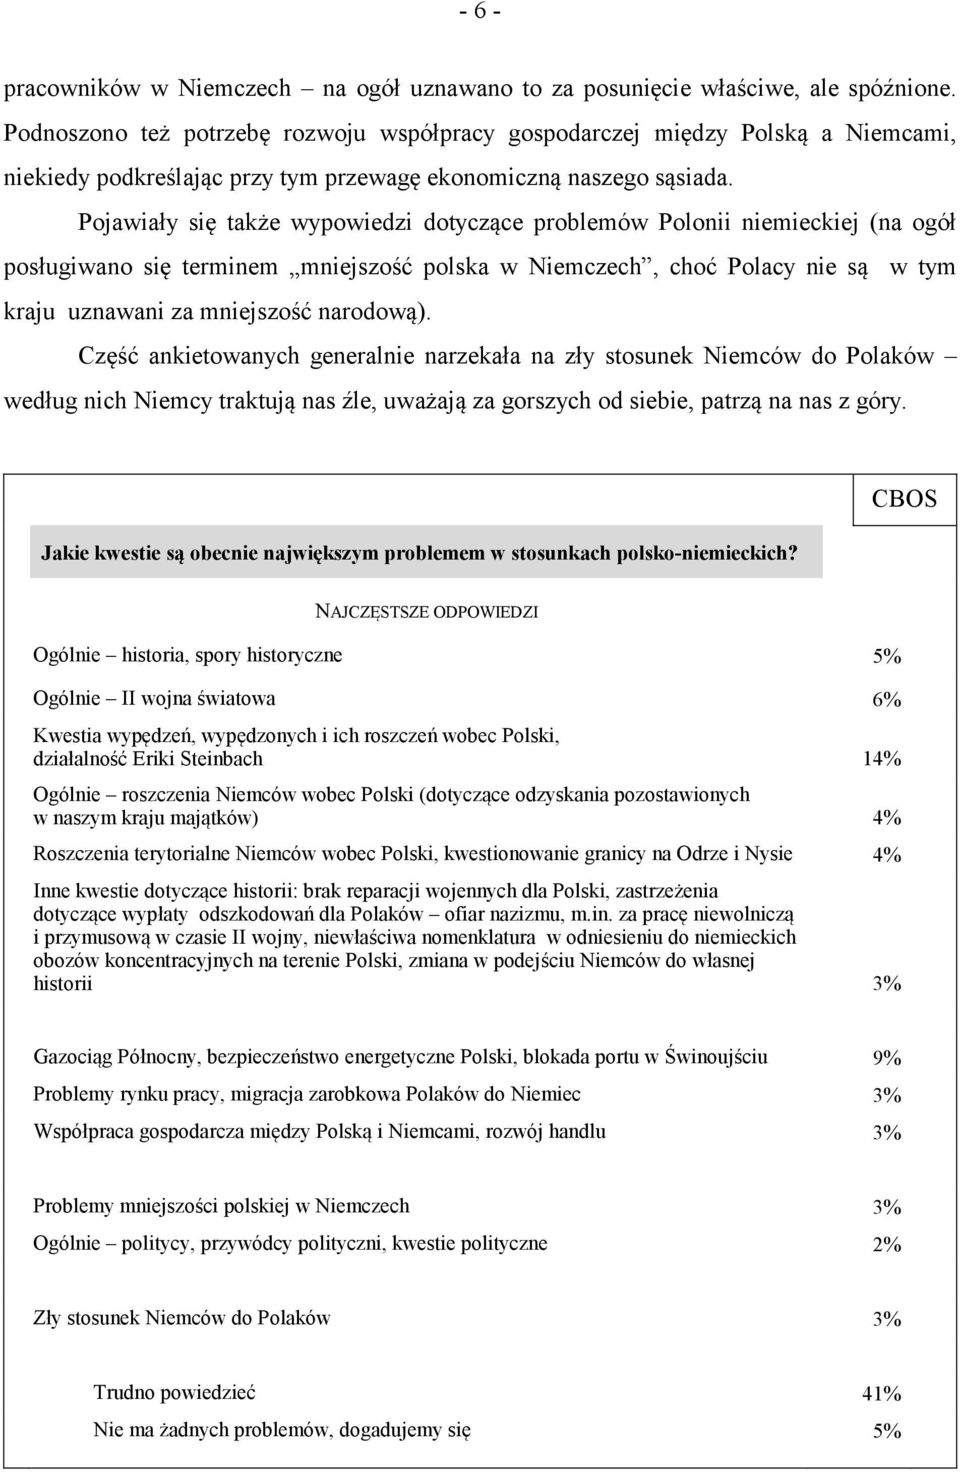 Pojawiały się także wypowiedzi dotyczące problemów Polonii niemieckiej (na ogół posługiwano się terminem mniejszość polska w Niemczech, choć Polacy nie są w tym kraju uznawani za mniejszość narodową).